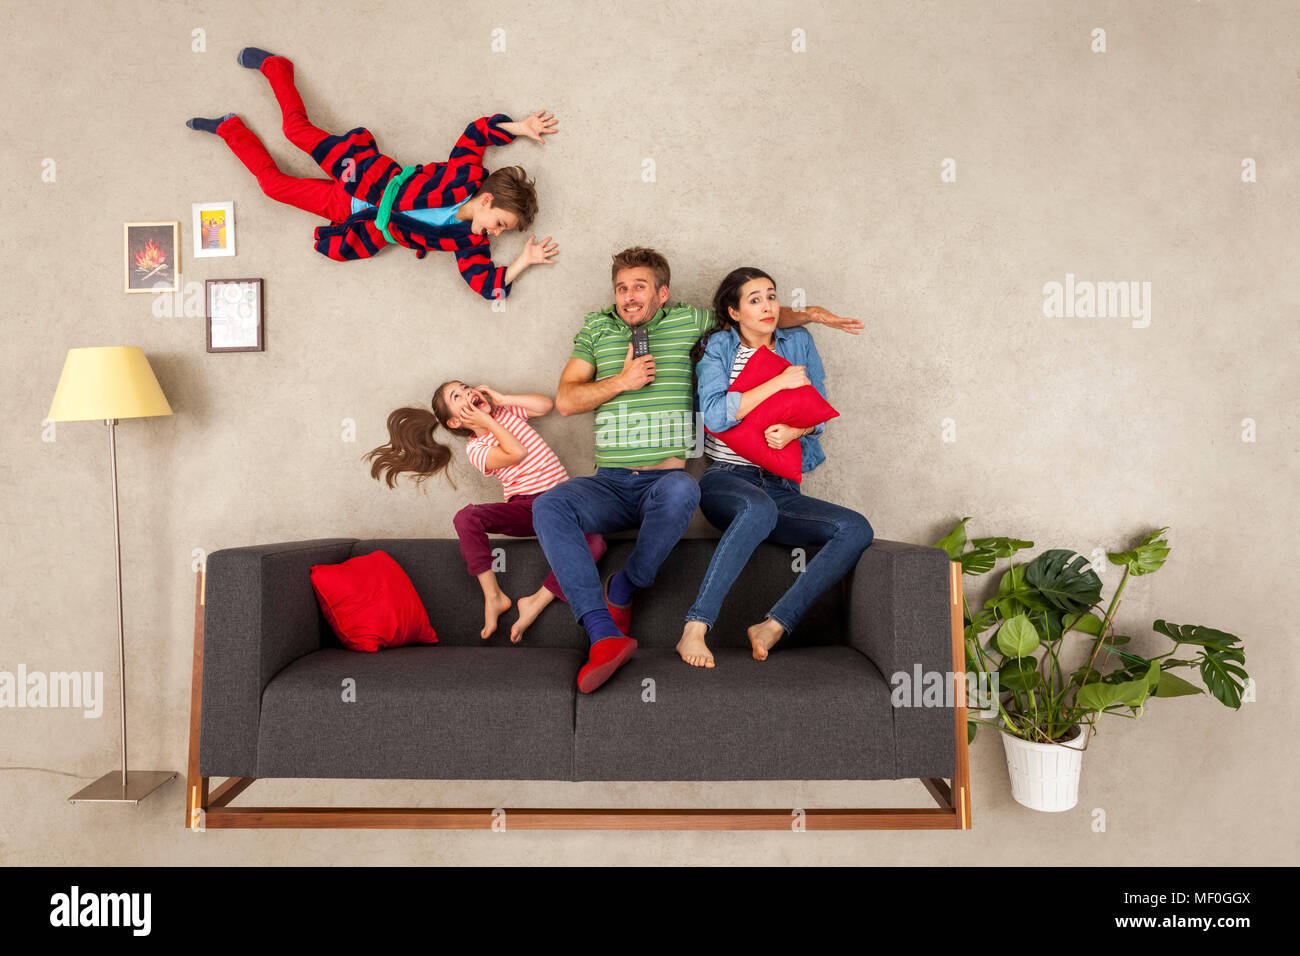 Familia con dos niños viendo la televisión juntos Foto de stock